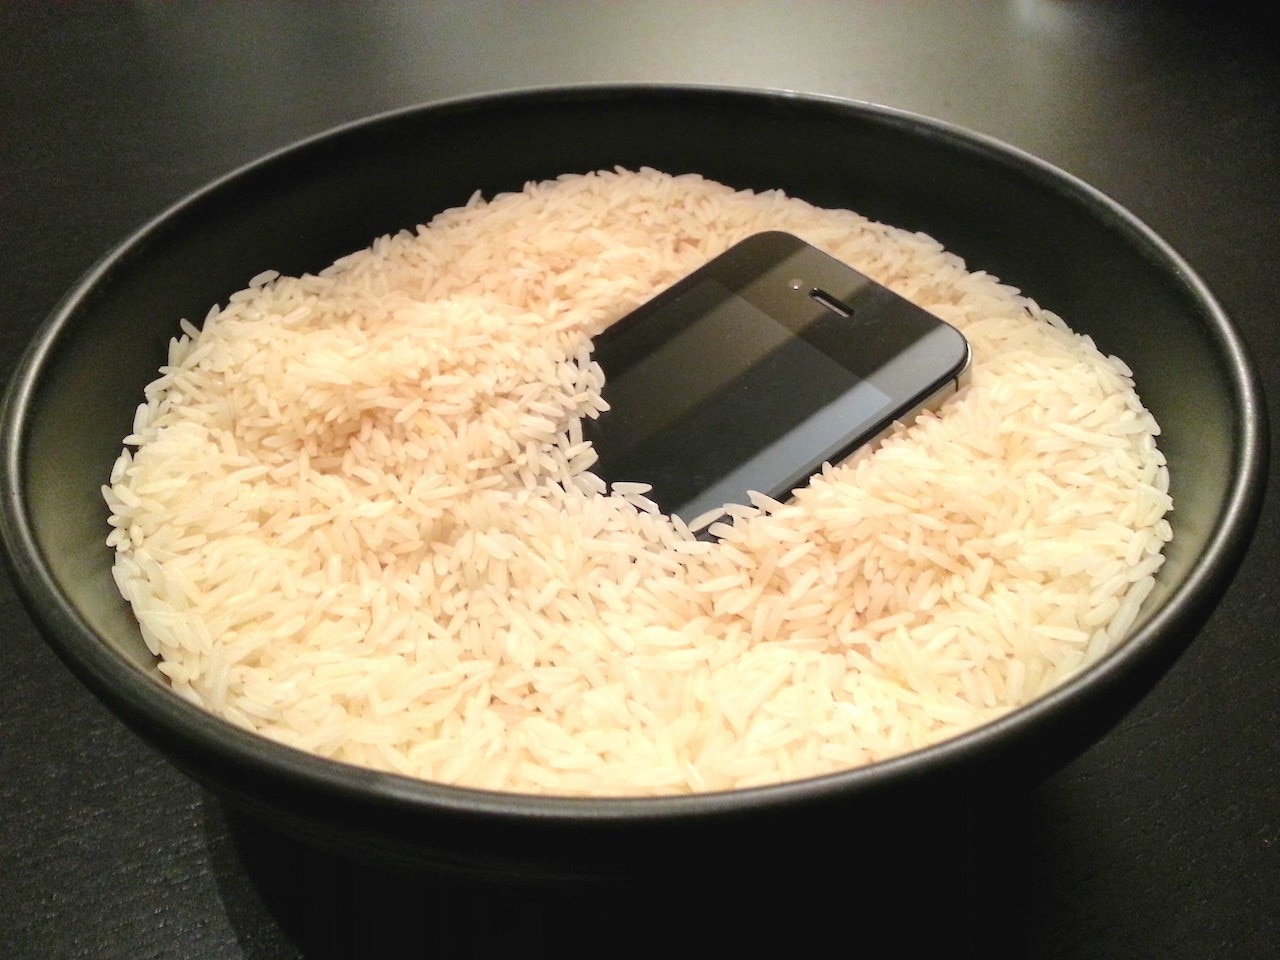 Il riso non salva lo smartphone bagnato! | MobileWorld